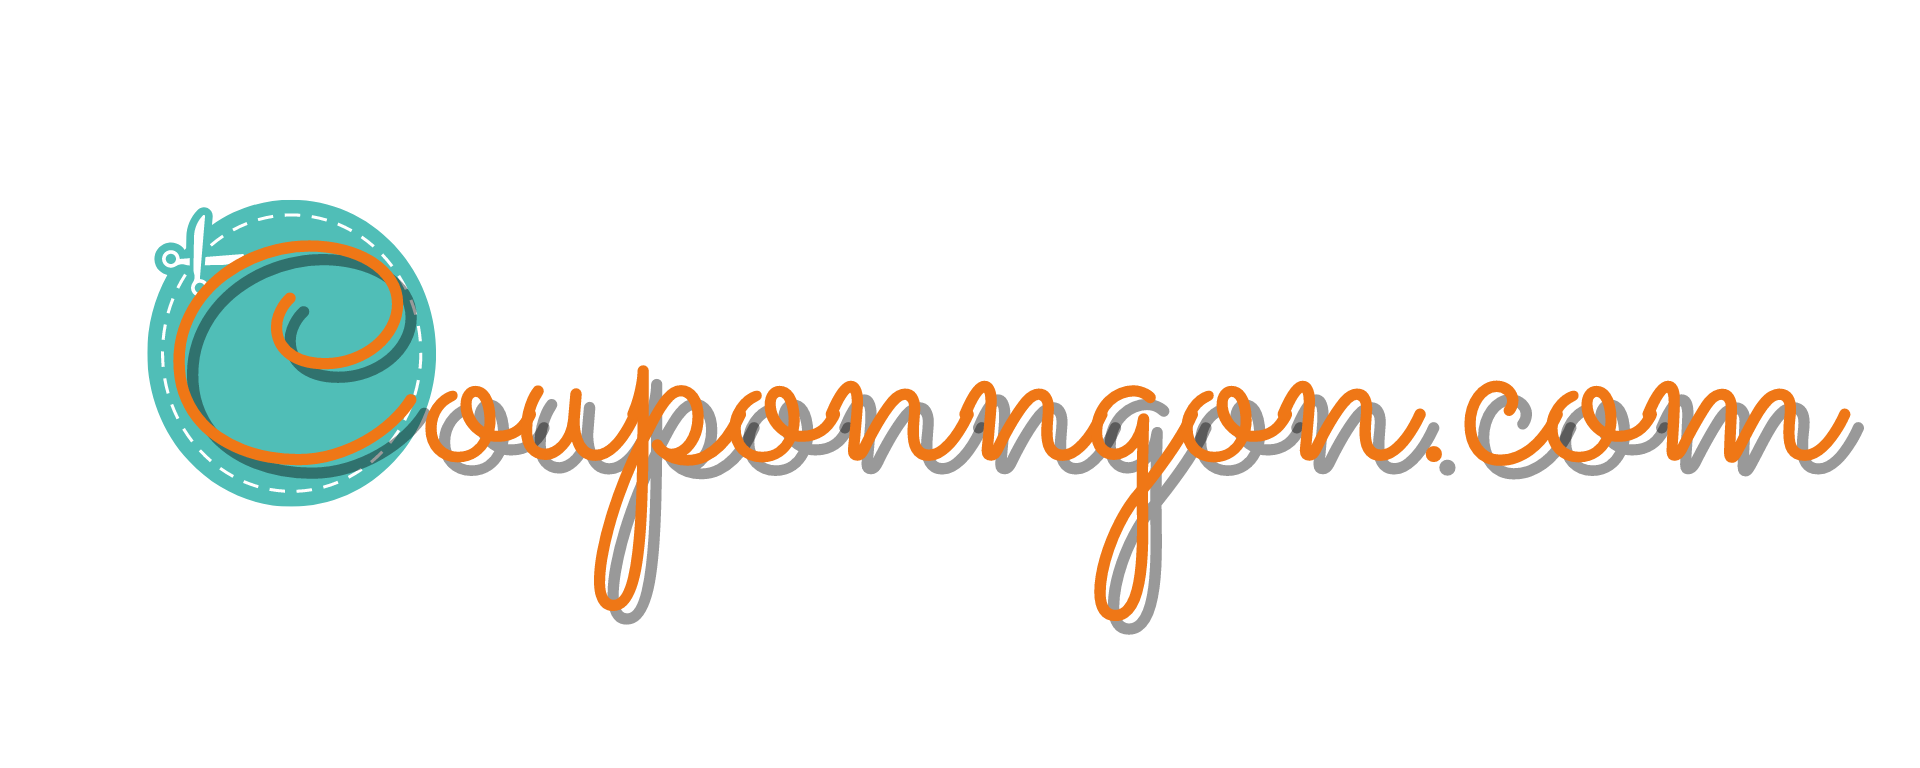 Couponngon.com 